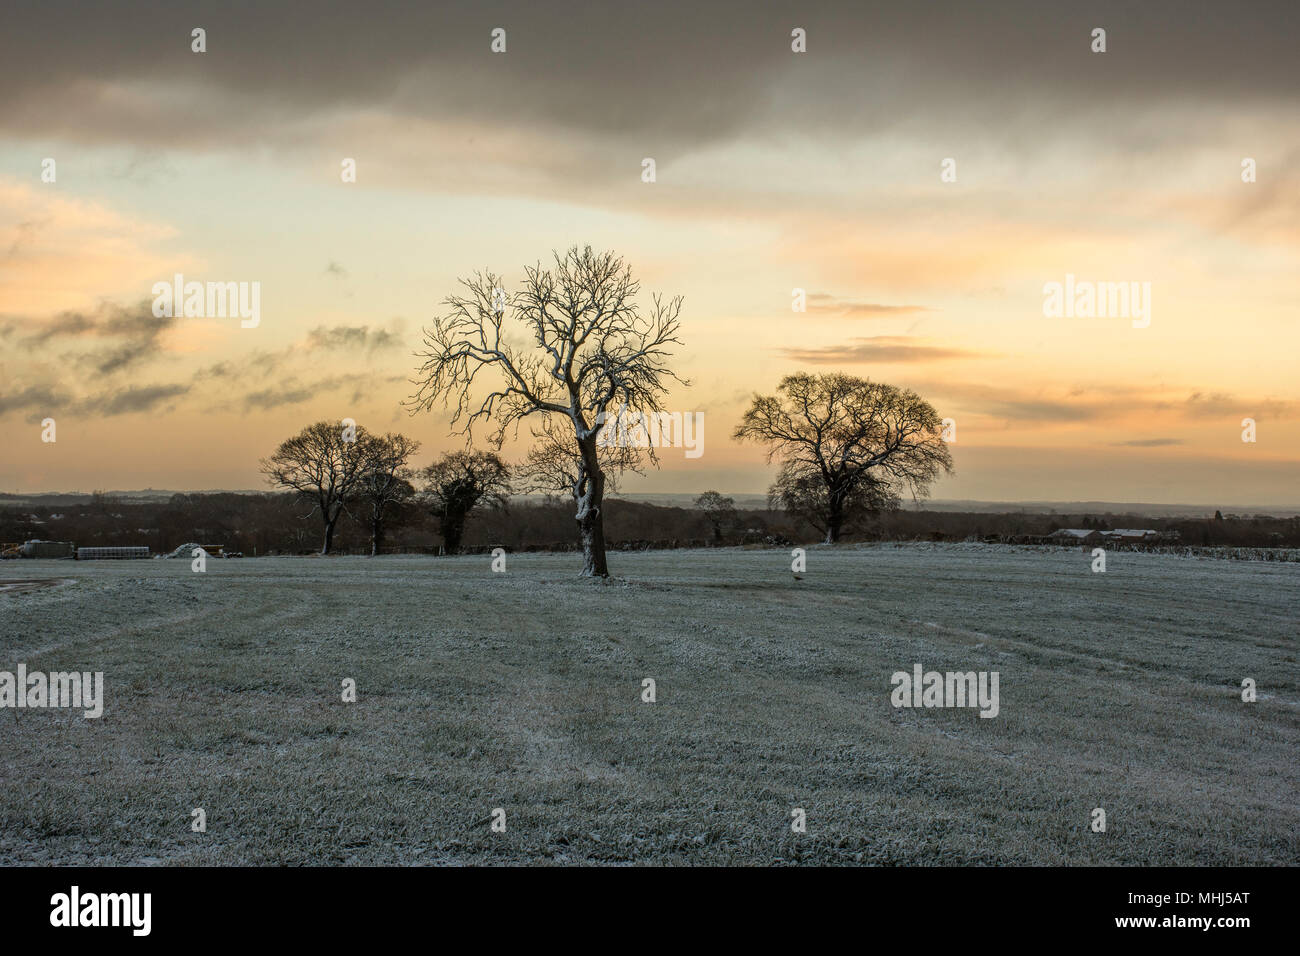 Sonnenaufgang über Staffordshire Felder im Winter. Lichfield, Großbritannien. Bäume, Felder bedeckt mit Frost und die dramatischen, dunklen Himmel mit Wolken bei Sonnenaufgang. Stockfoto